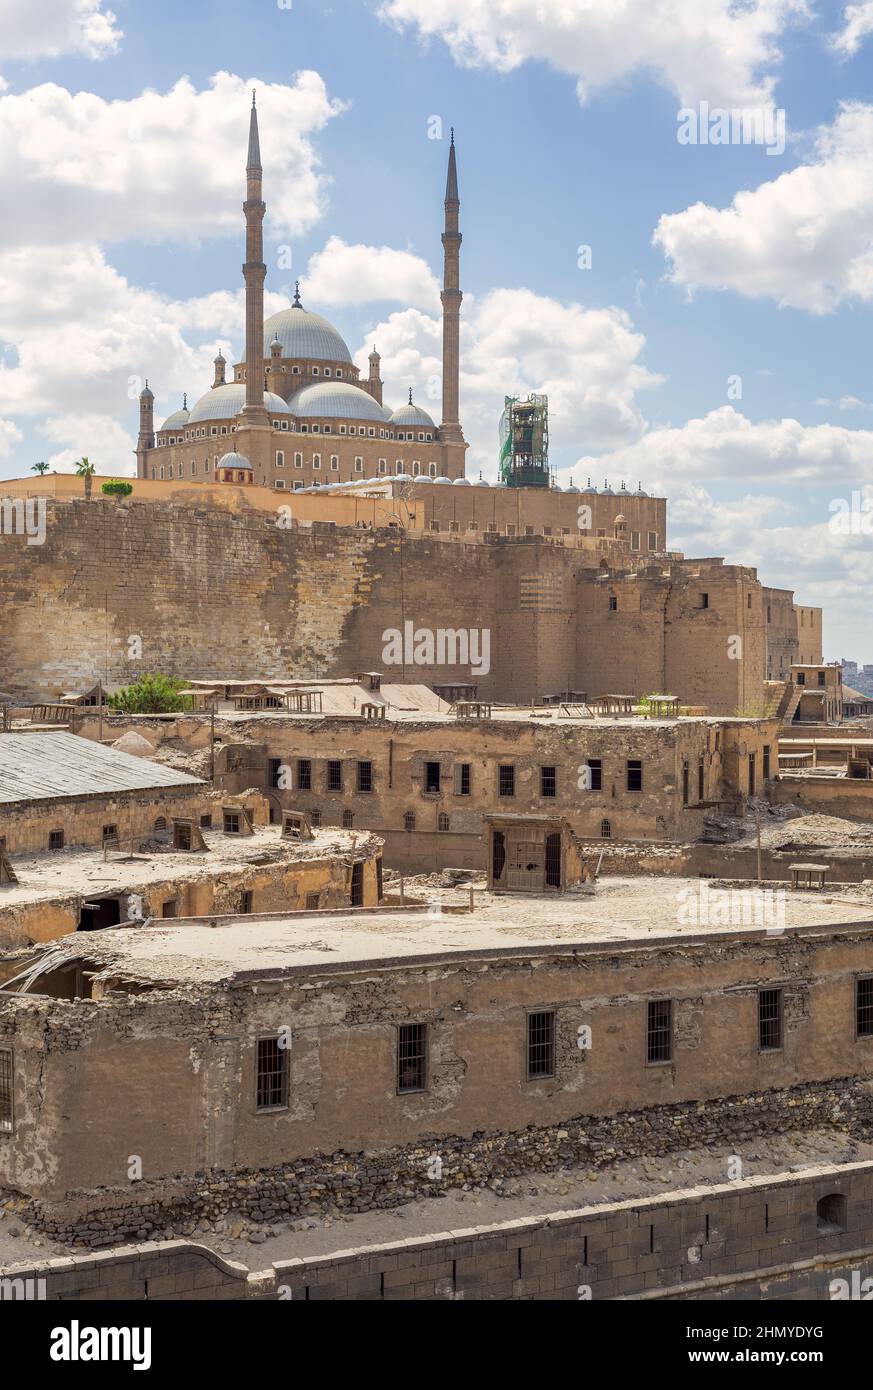 La gran Mezquita de Muhammad Ali Pasha, también conocida como Mezquita de Alabastro, situada en la Ciudadela de El Cairo en Egipto, uno de los monumentos y atracciones turísticas de El Cairo, Egipto Foto de stock